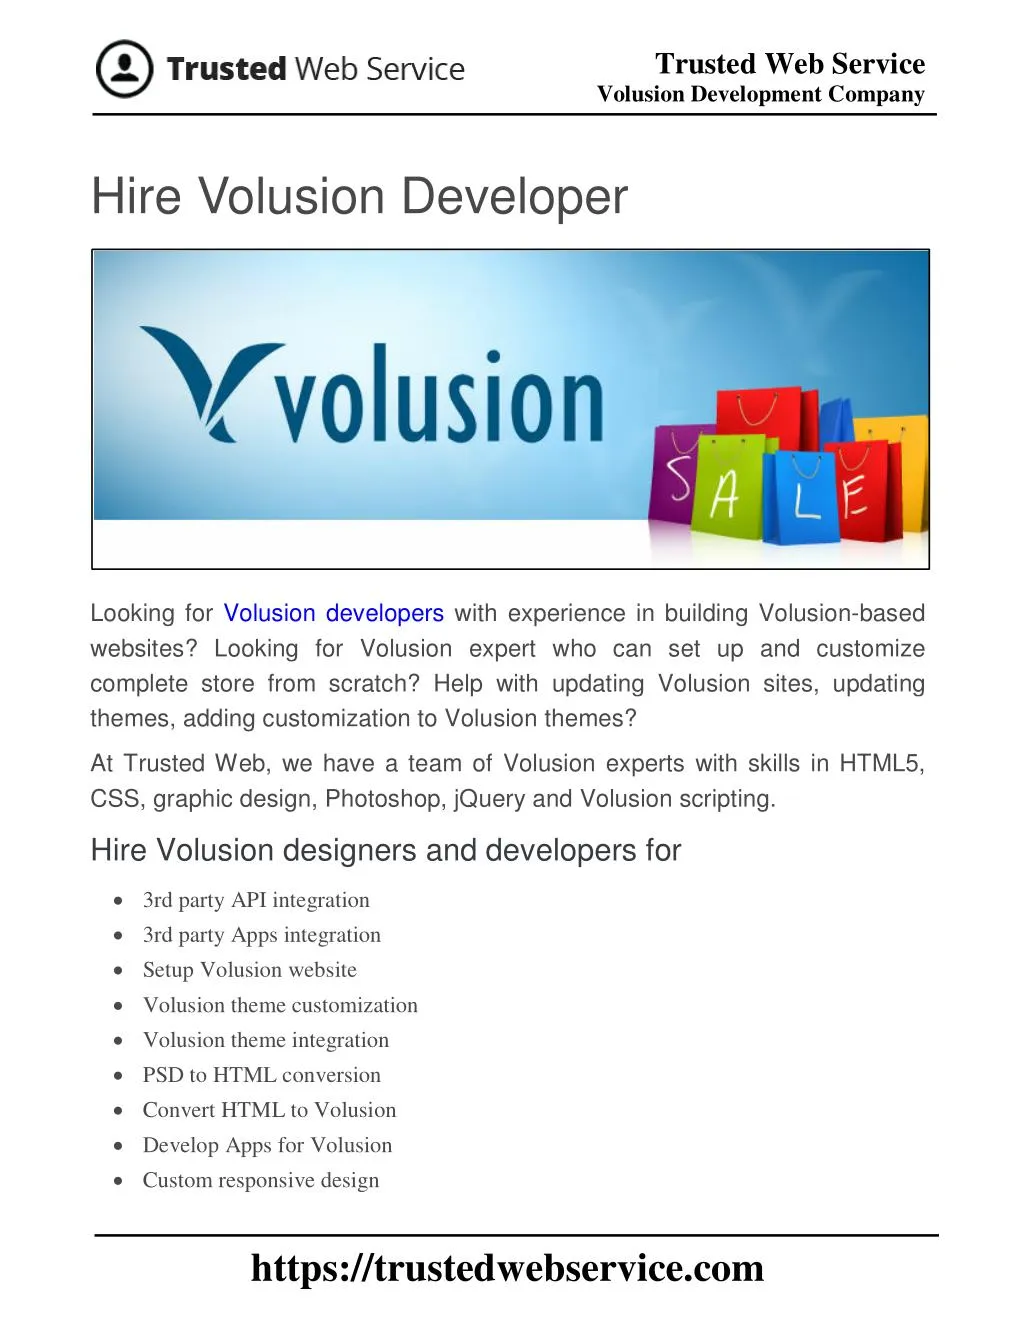 trusted web service volusion development company